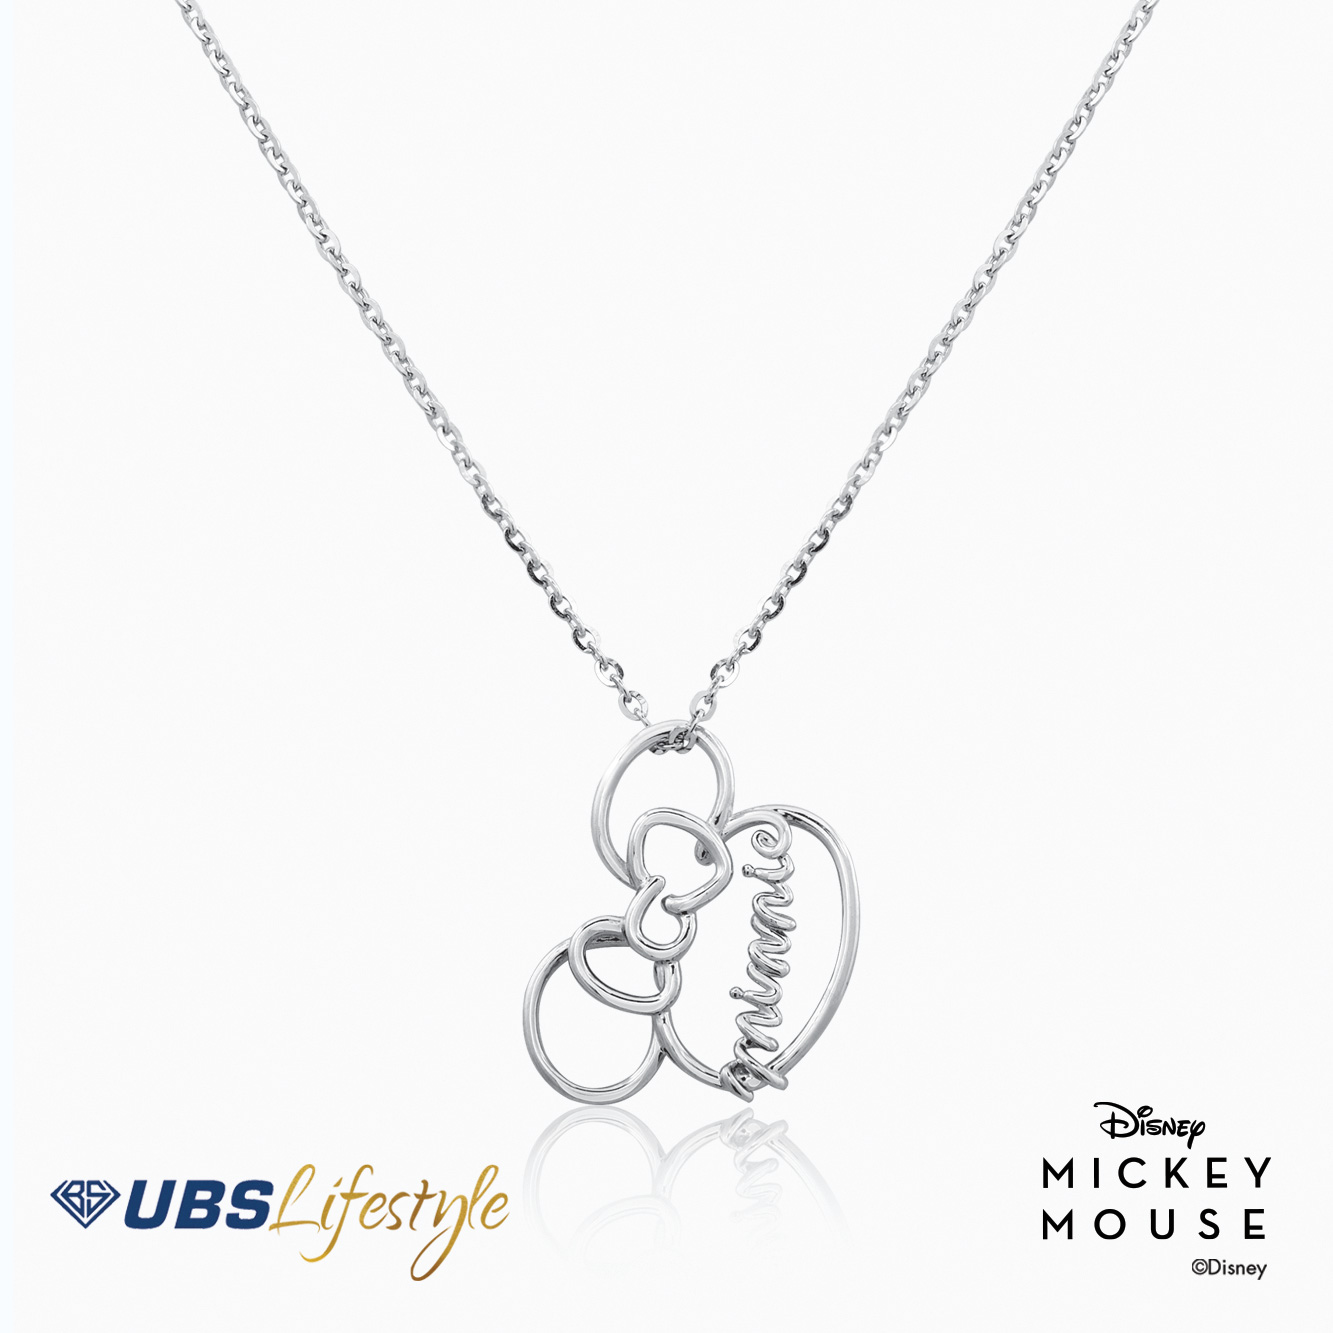 UBS Kalung Emas Disney Minnie Mouse - Kky0258 - 17K